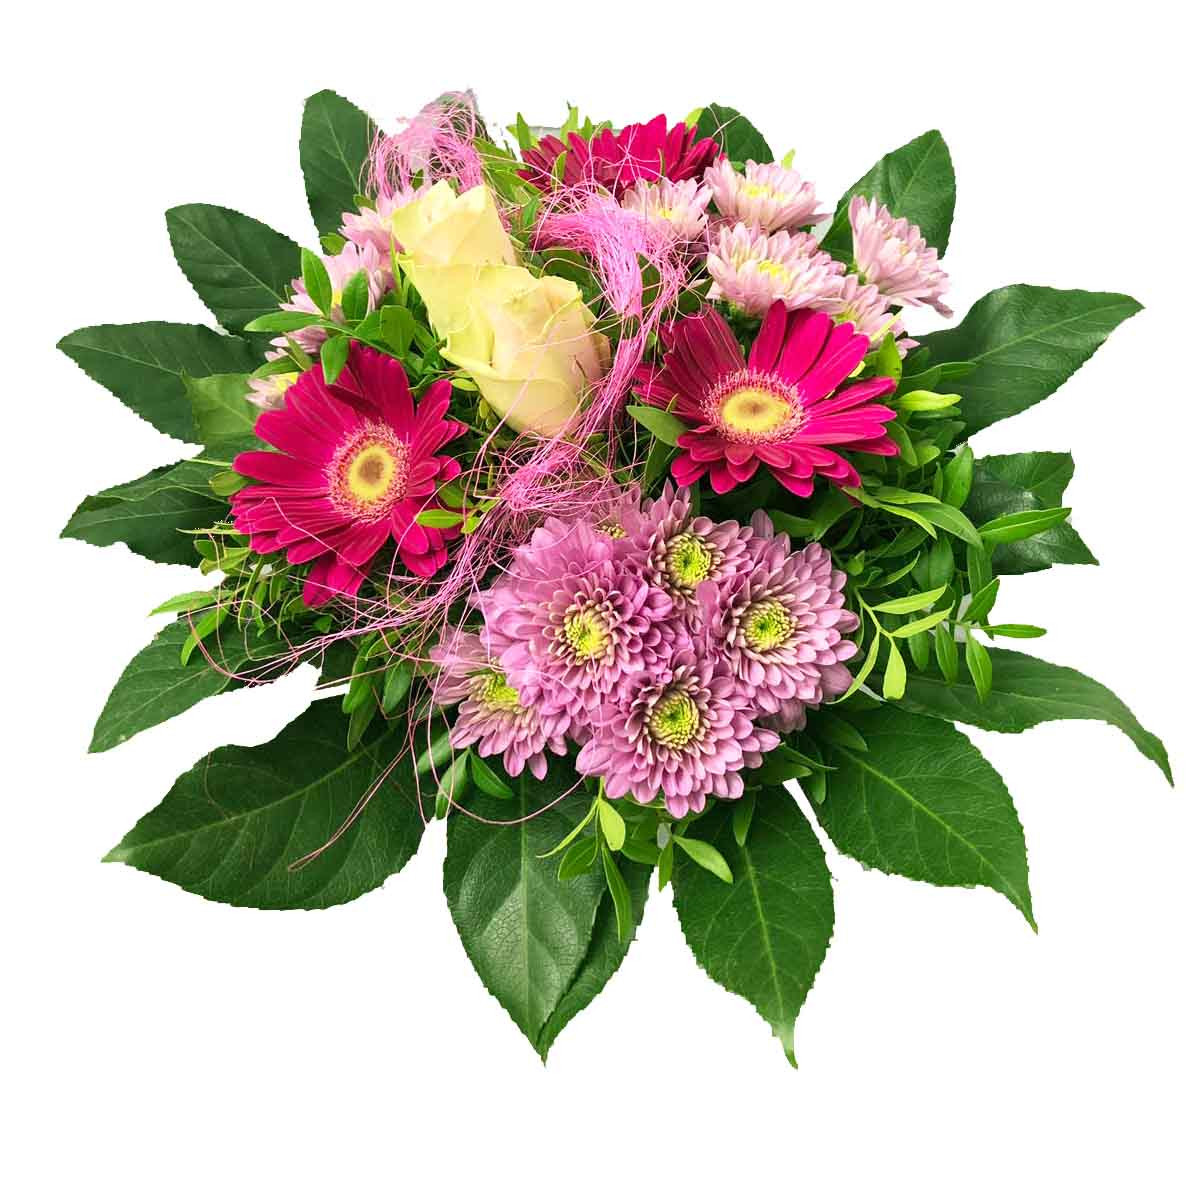 Blumenstrauß der Woche - Blumen online bestellen bei blumenstrauss.de